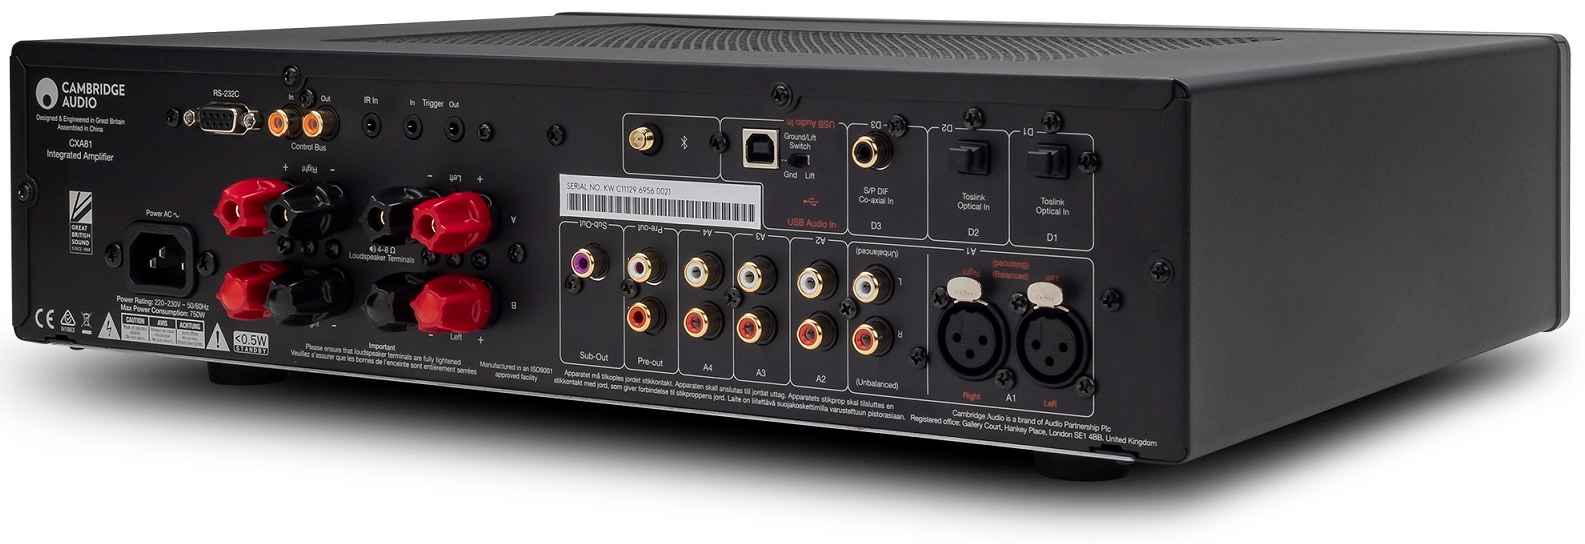 Cambridge Audio CXA81 grijs - achteraanzicht - Stereo versterker